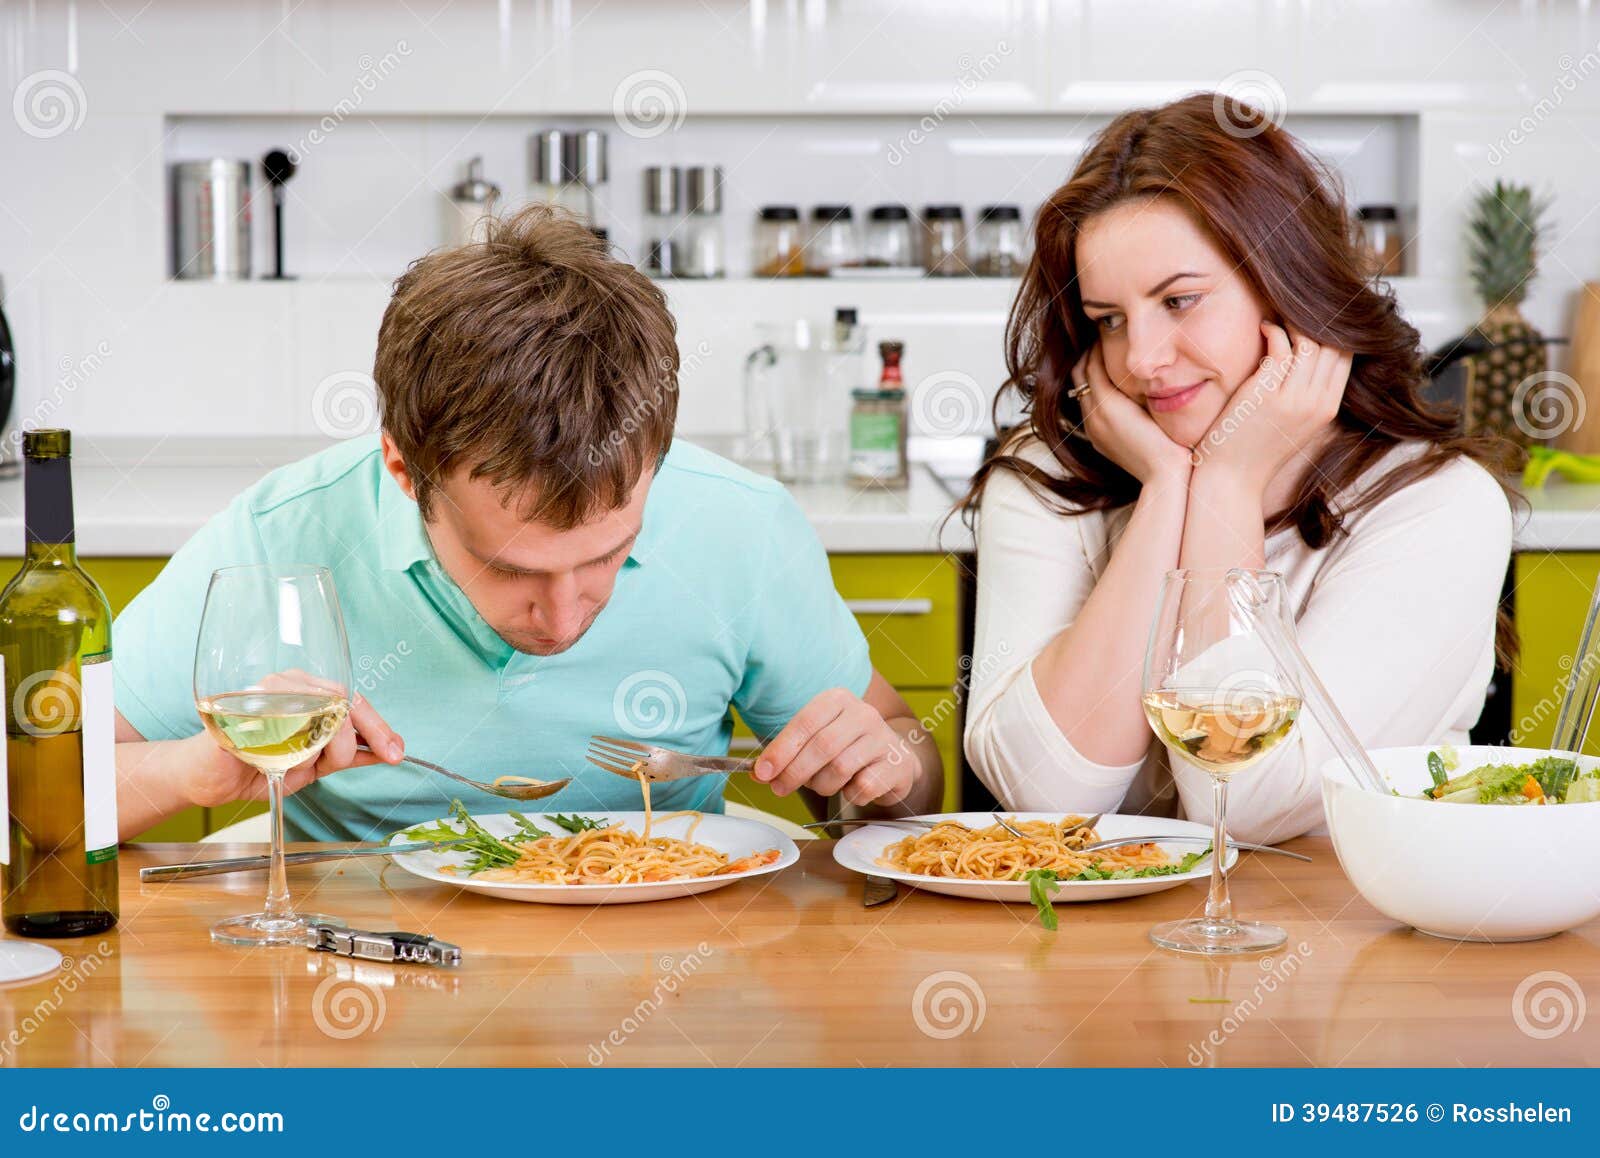 Муж заставляет жену есть. Мужчина и женщина ужинают. Мужчина и женщина завтракают. Супруги за столом. Муж ужинает на кухне.